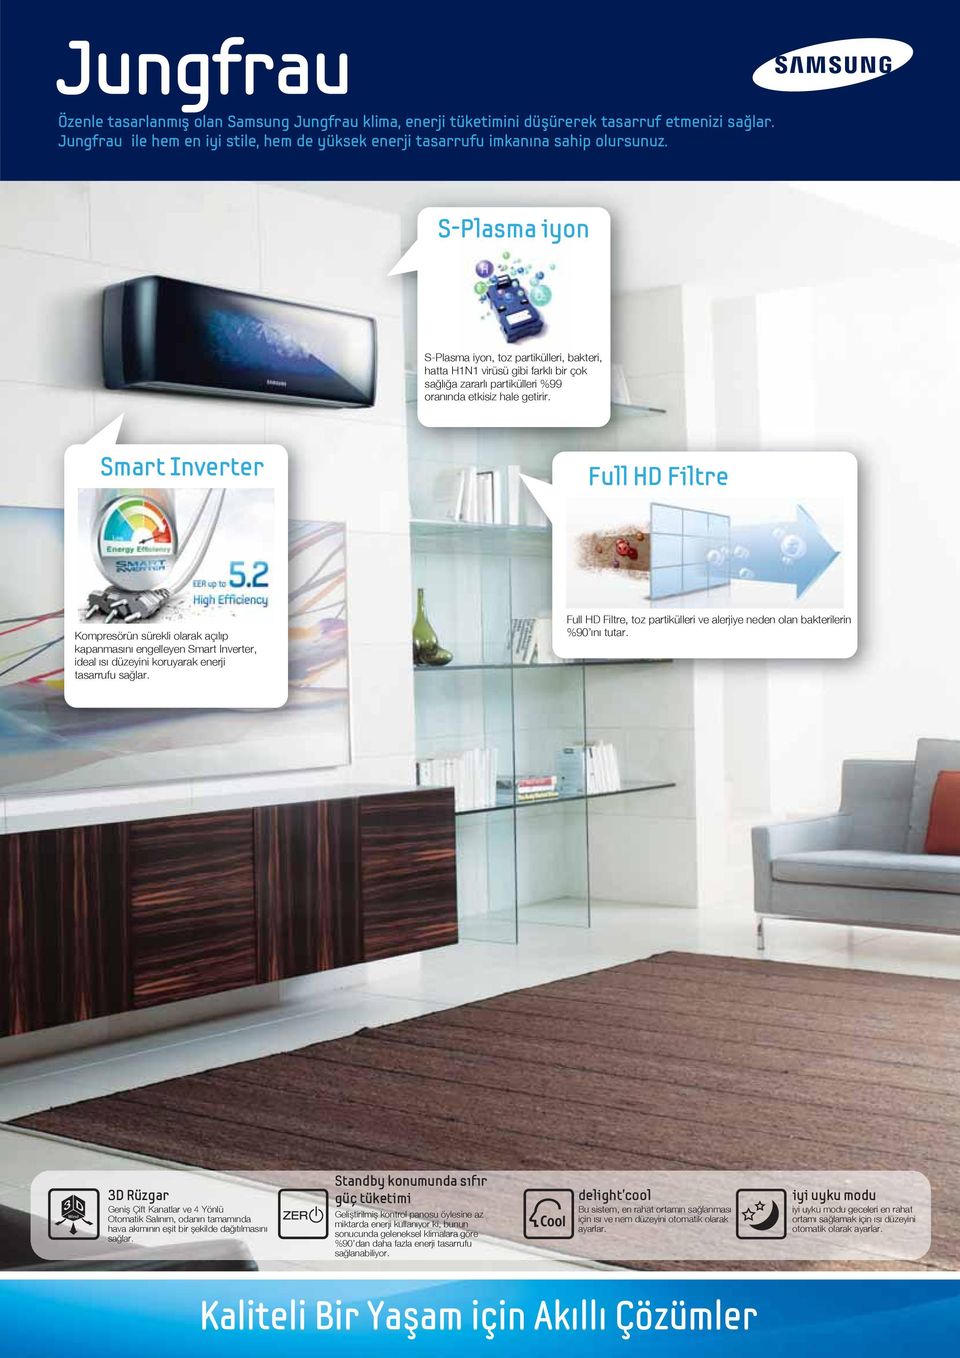 Smart Inverter Full HD Filtre Kompresörün sürekli olarak açılıp kapanmasını engelleyen Smart Inverter, ideal ısı düzeyini koruyarak enerji tasarrufu sağlar.